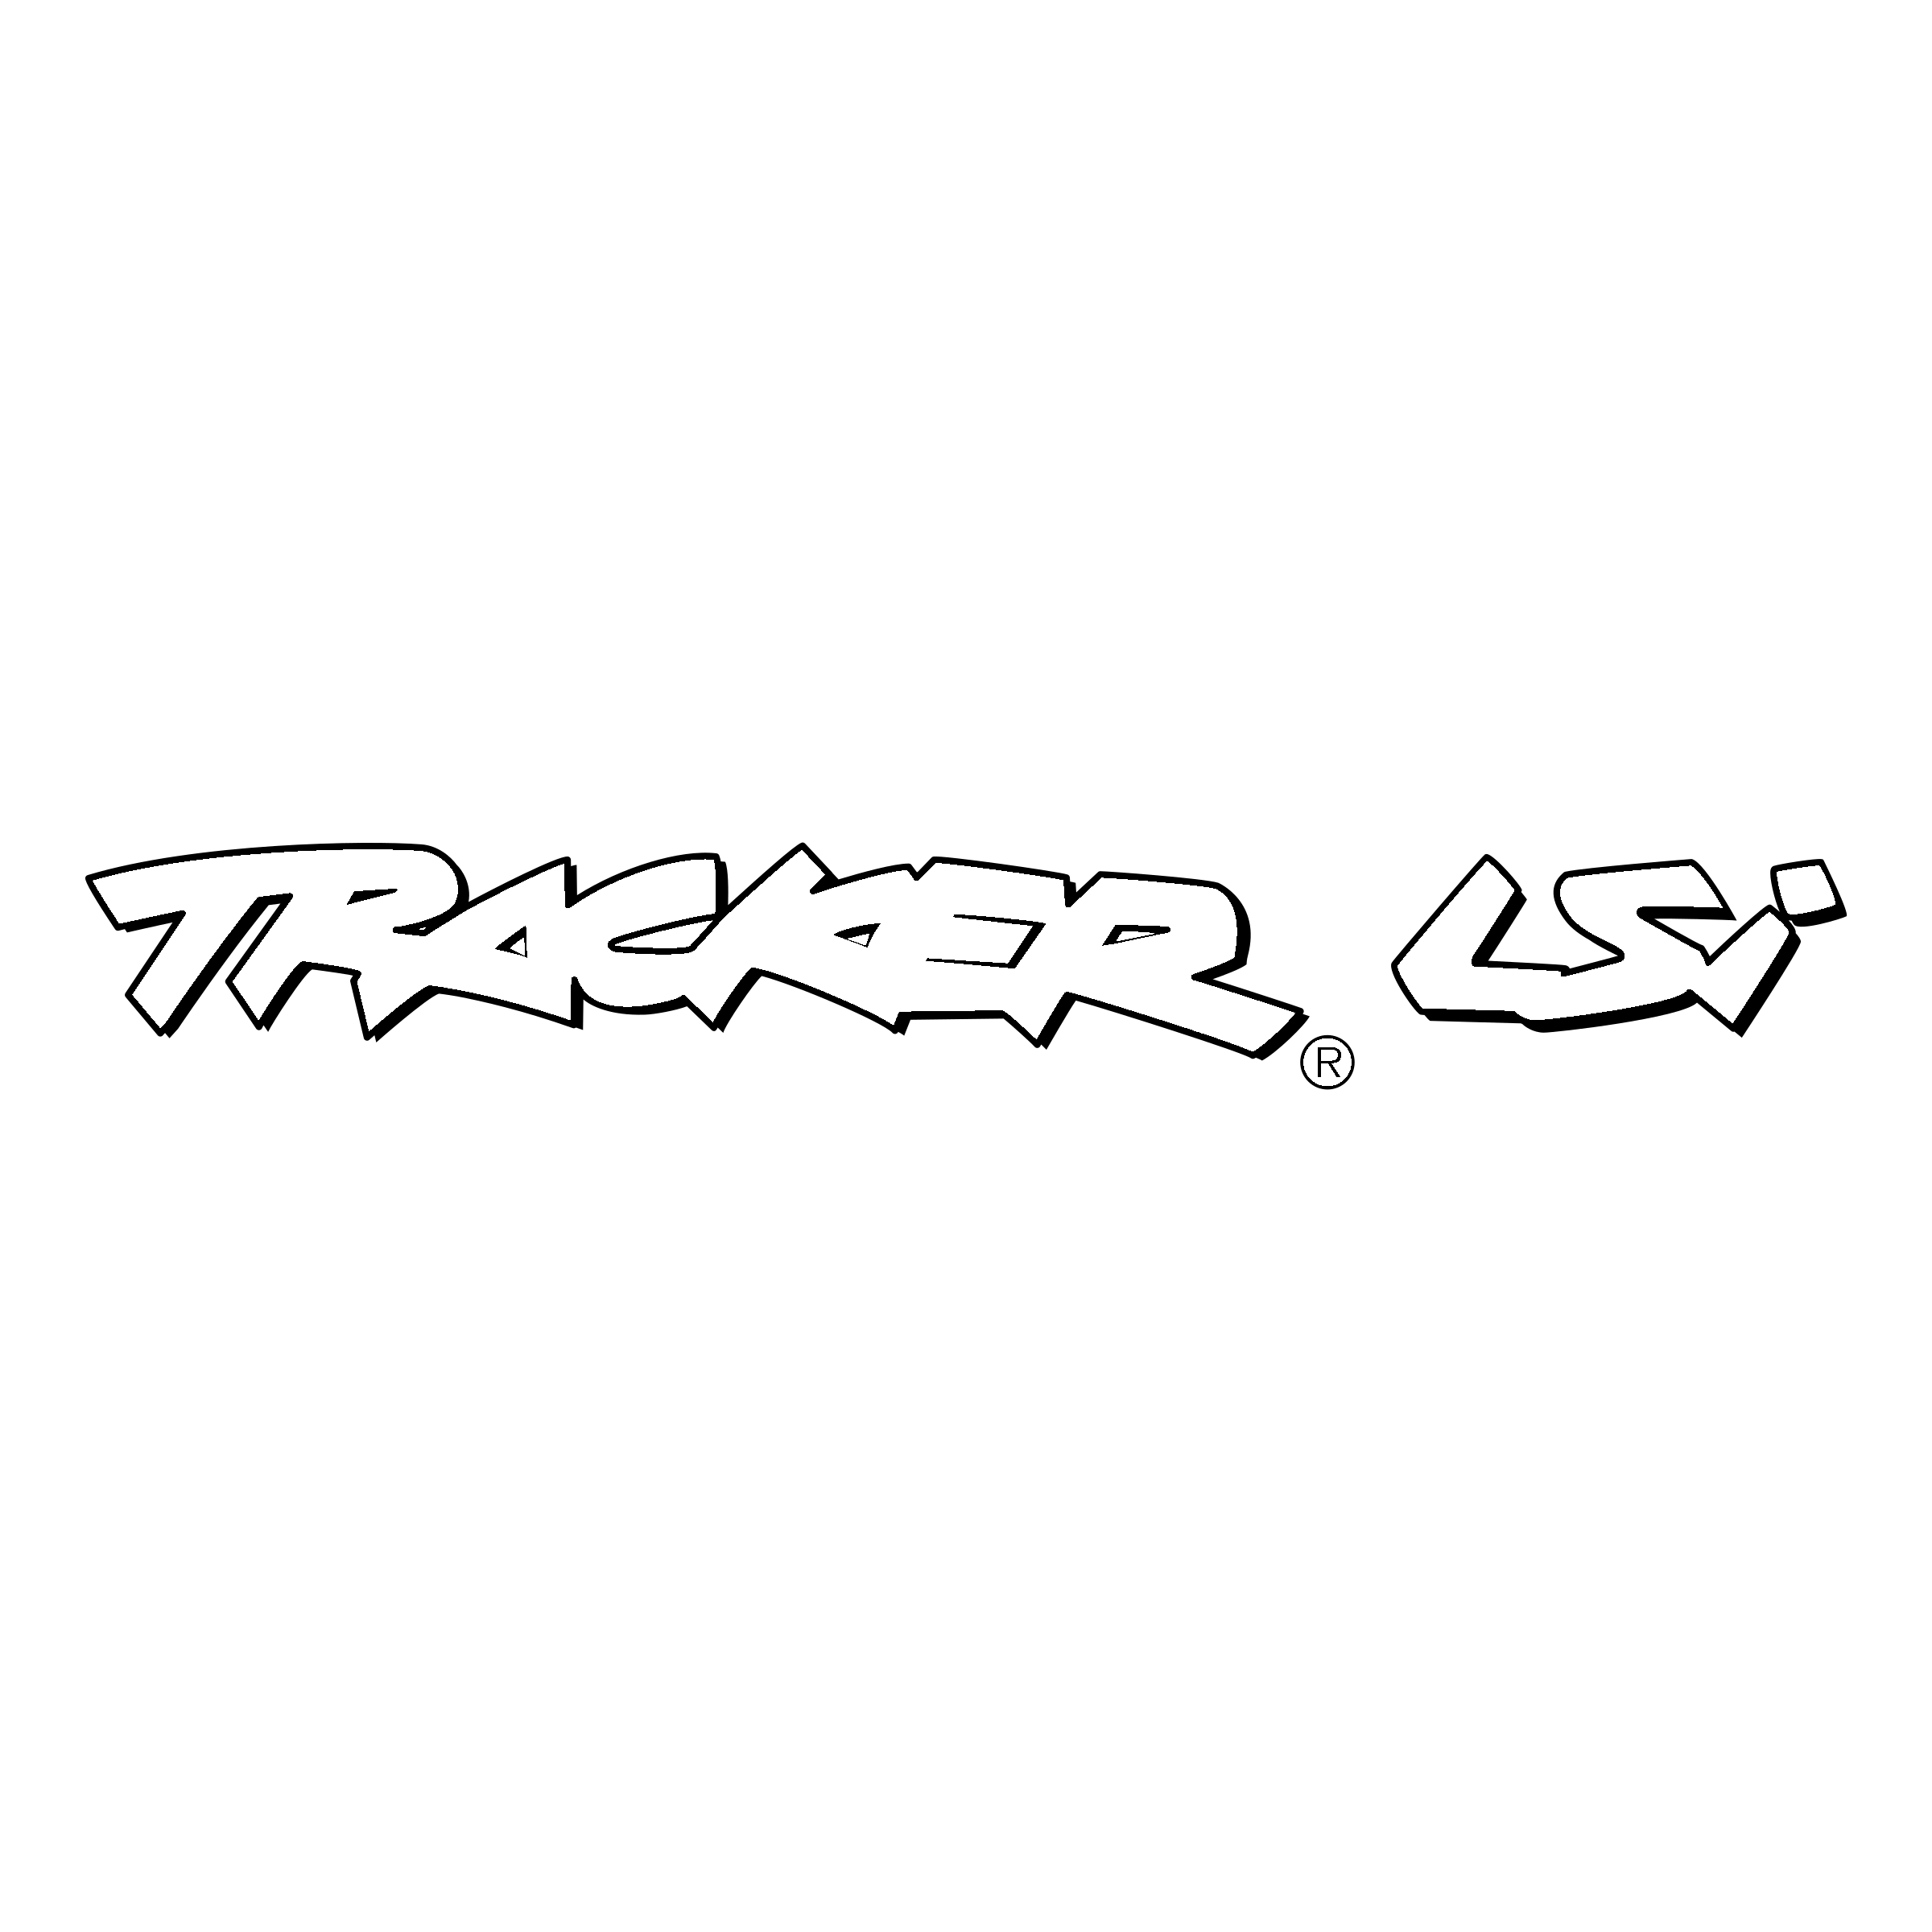 LSI Logo - Tracker LSi Logo PNG Transparent & SVG Vector - Freebie Supply